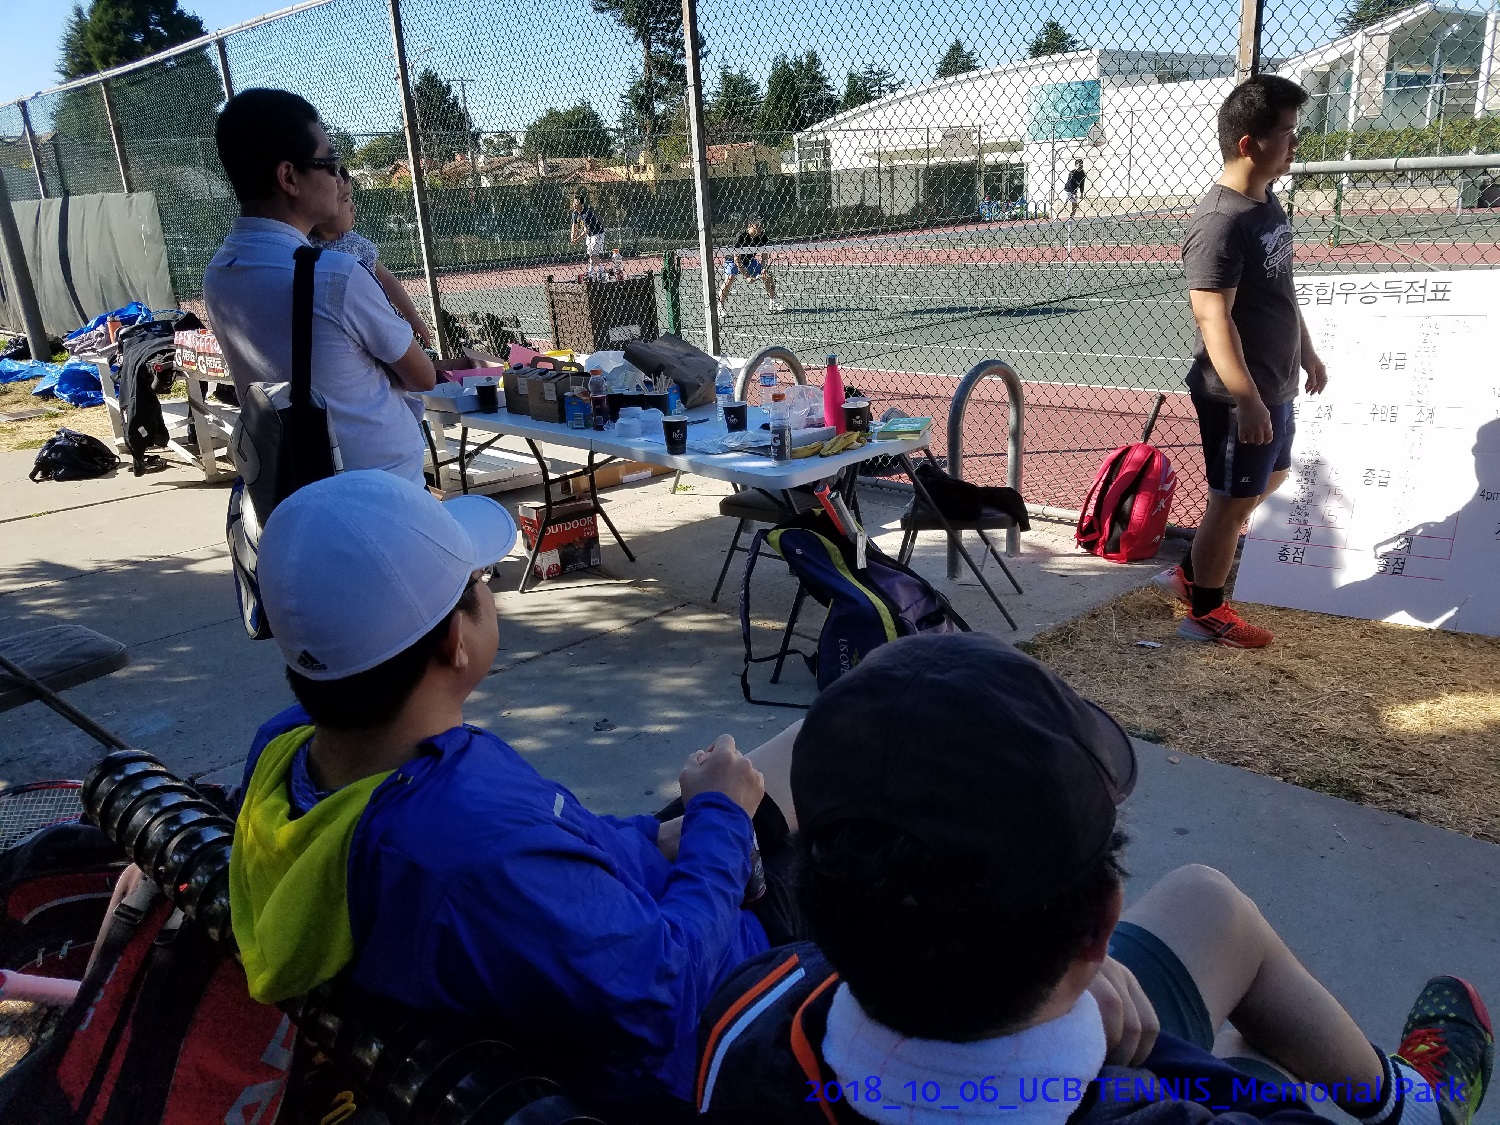 resized_2018_10_06_UCB Tennis at Memorial Park_110119.jpg